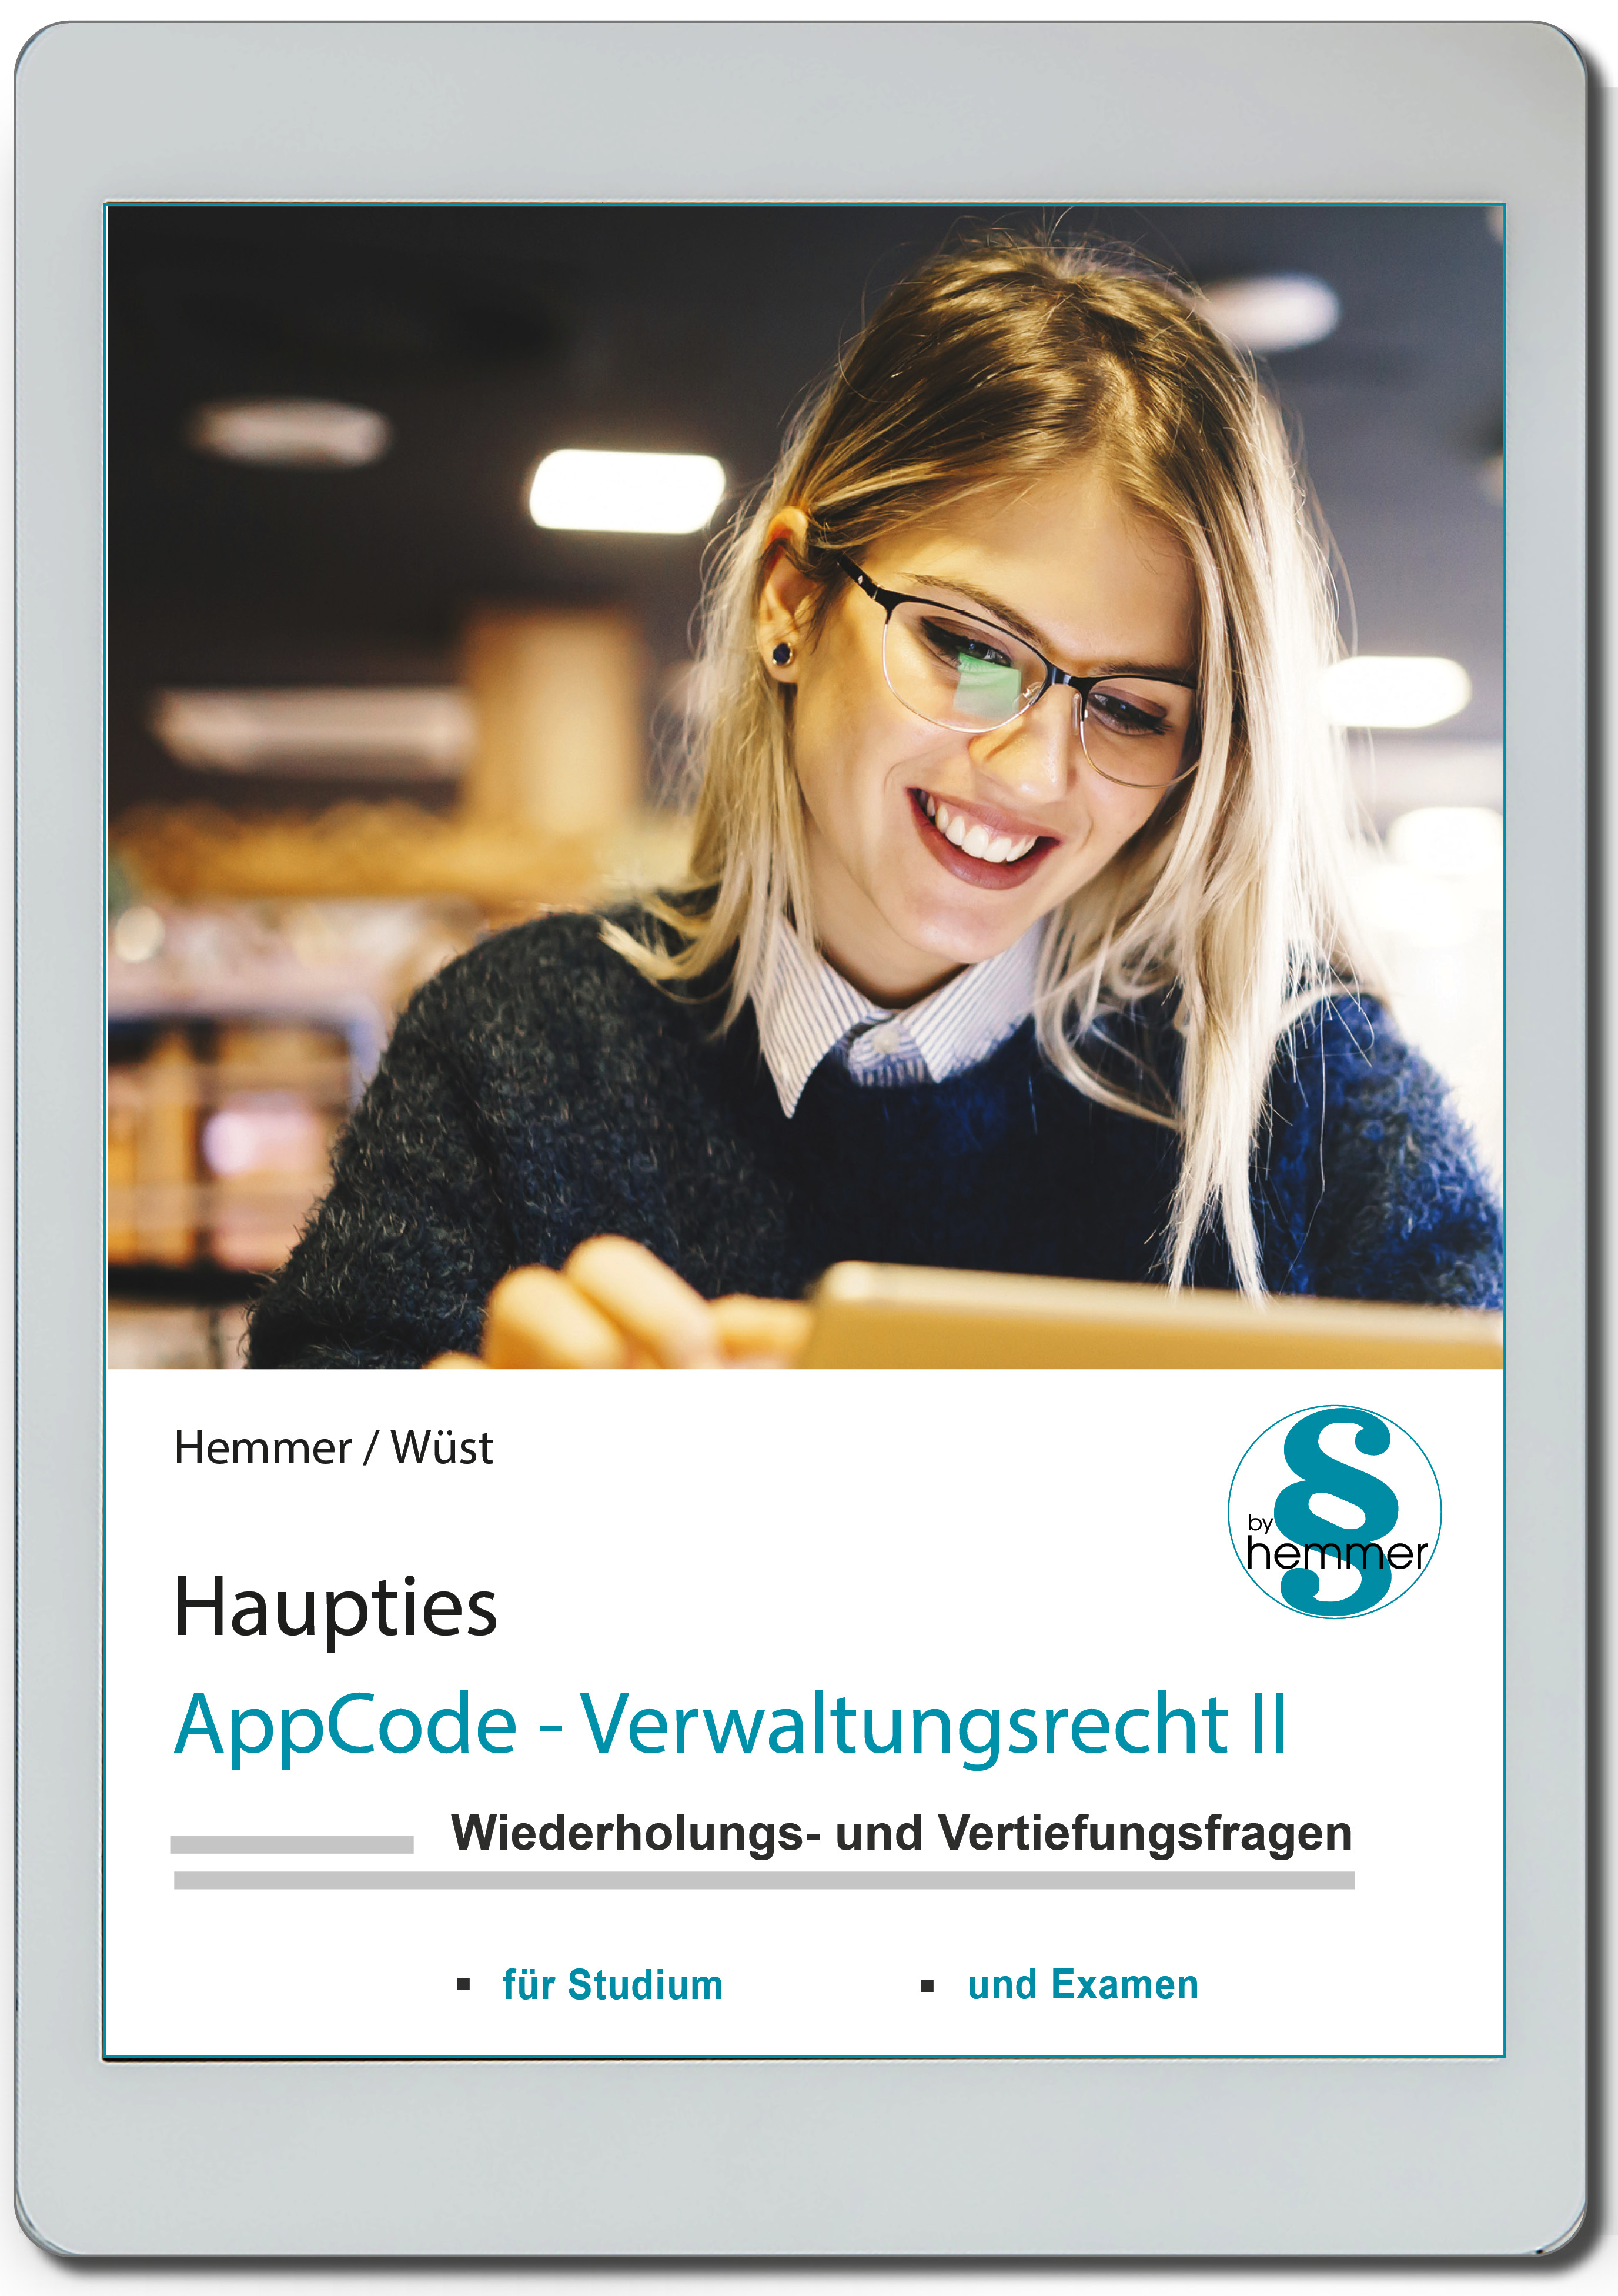 AppCode - haupties - Verwaltungsrecht II